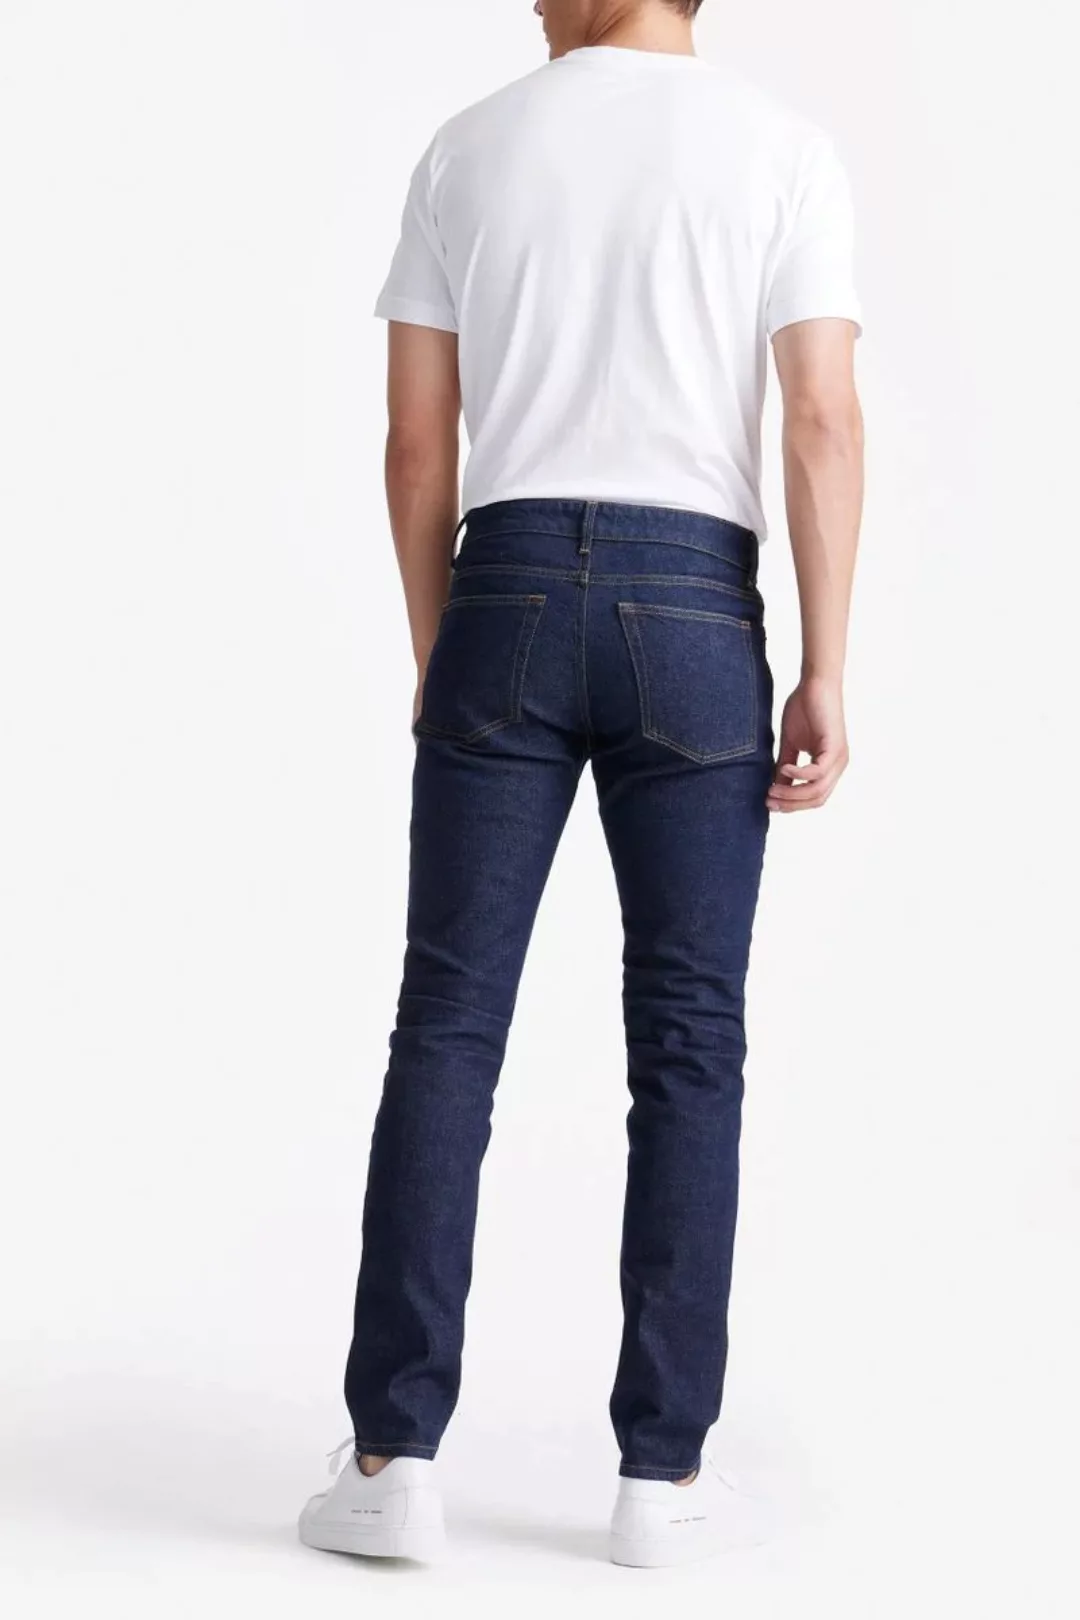 King Essentials The Jason Jeans Navy - Größe W 35 - L 36 günstig online kaufen